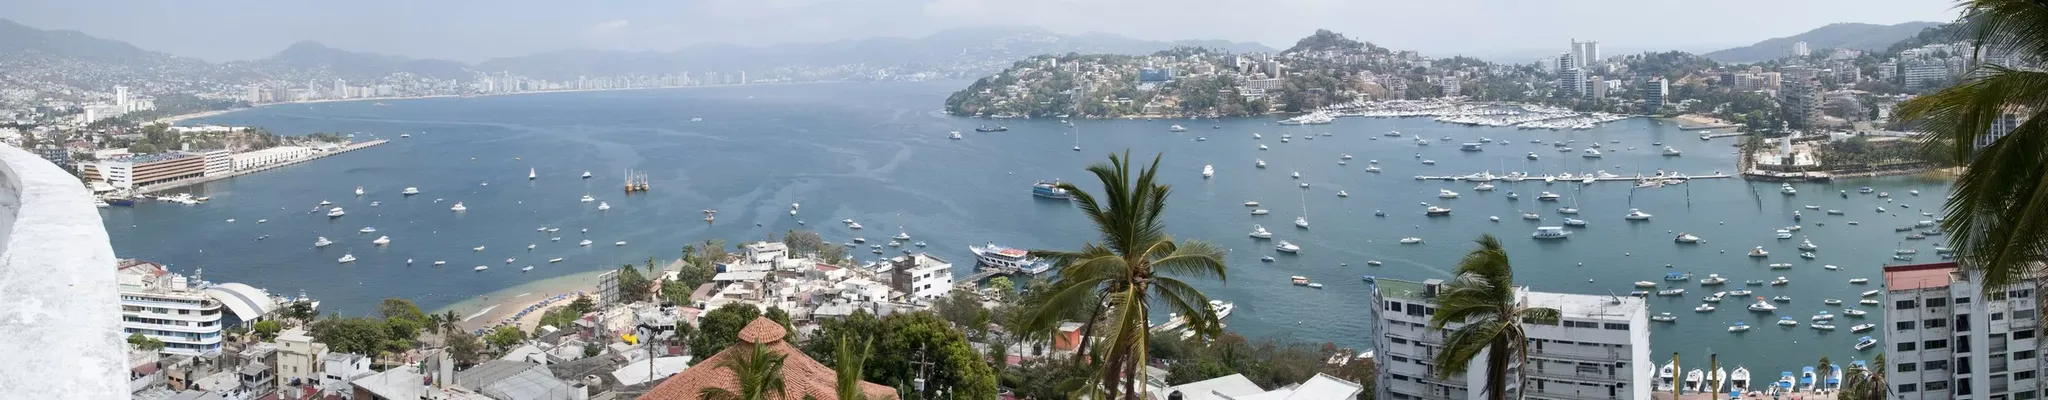 Acapulco | Guerrero Region, Mexico - Rated 6.7